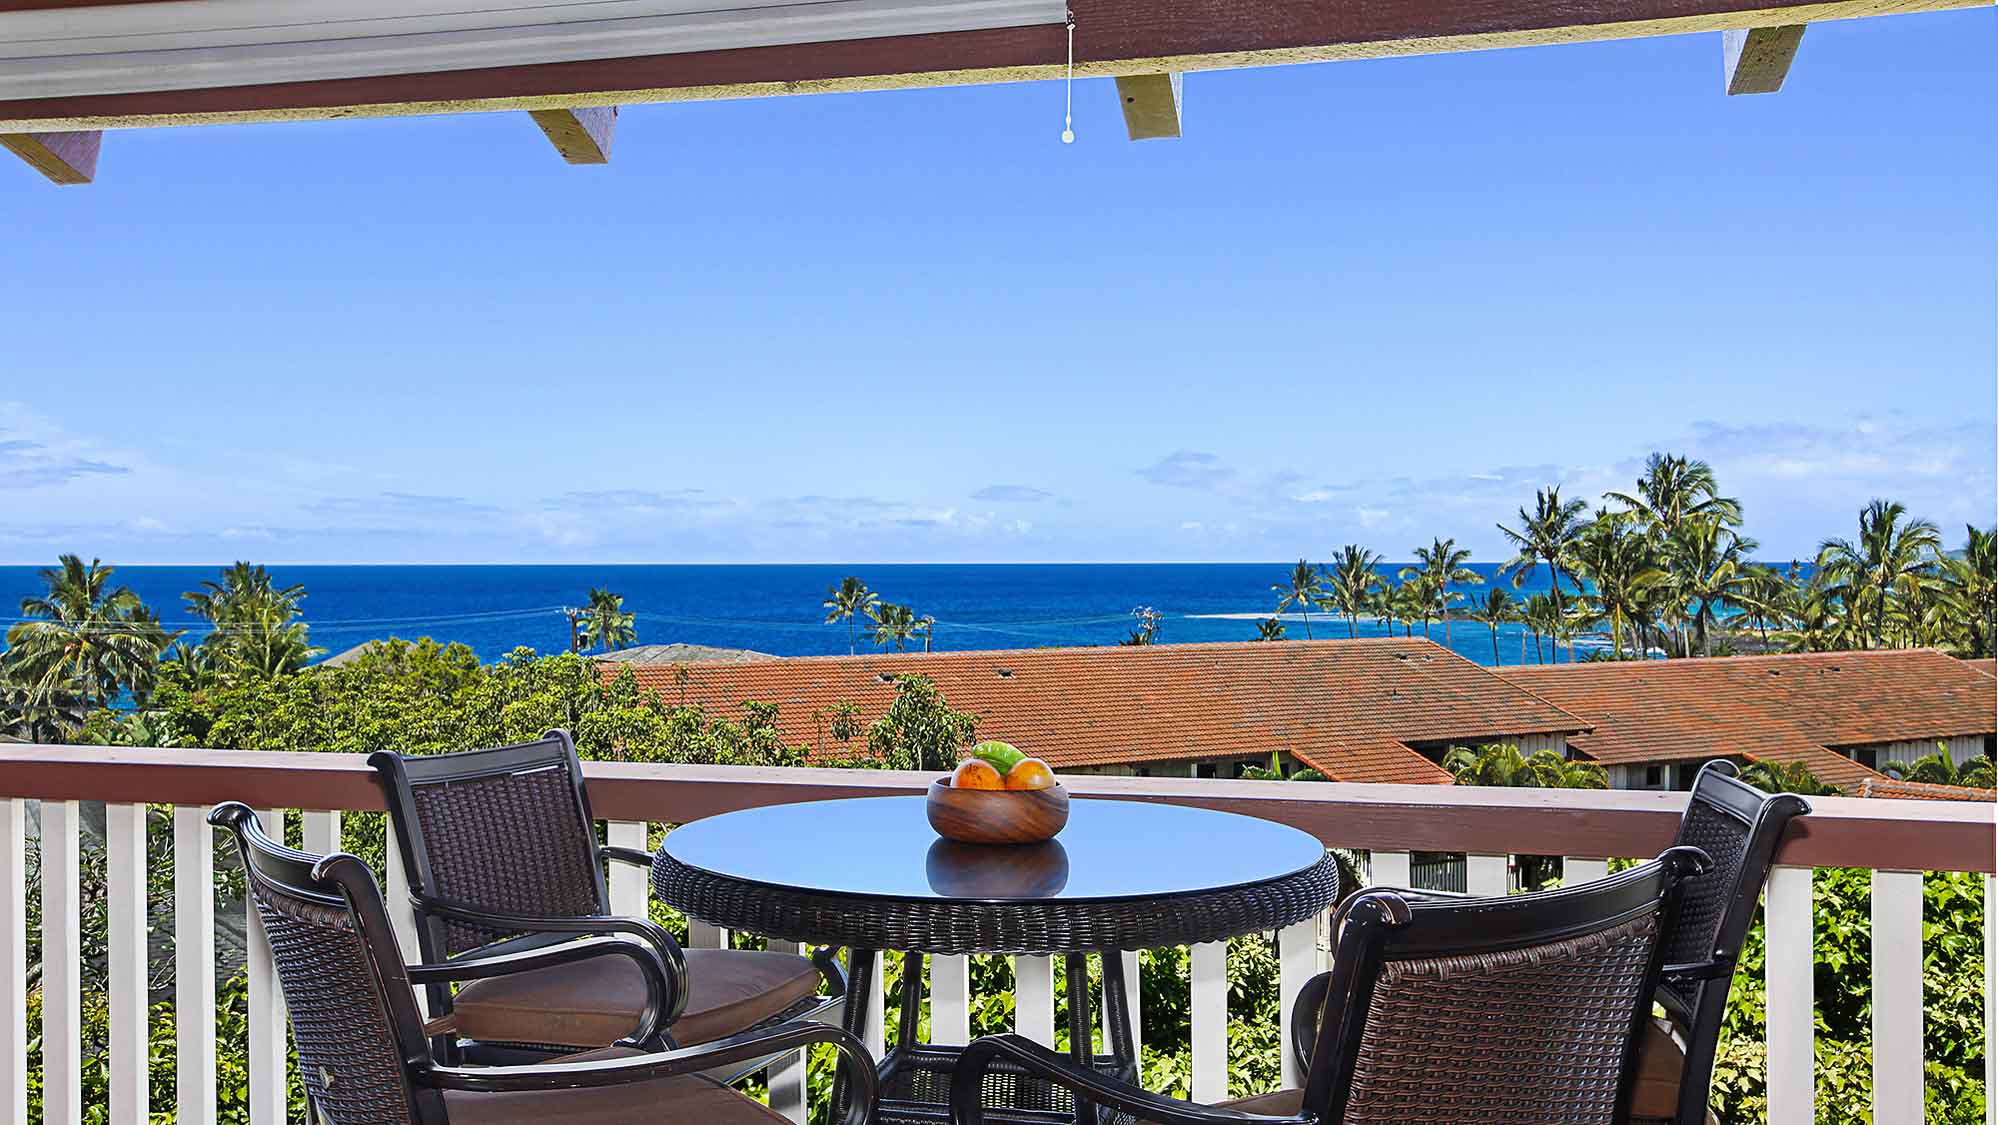 Kauai Deal at Nihi Kai - $198 for Poipu Condo with Ocean View - Kauai ...